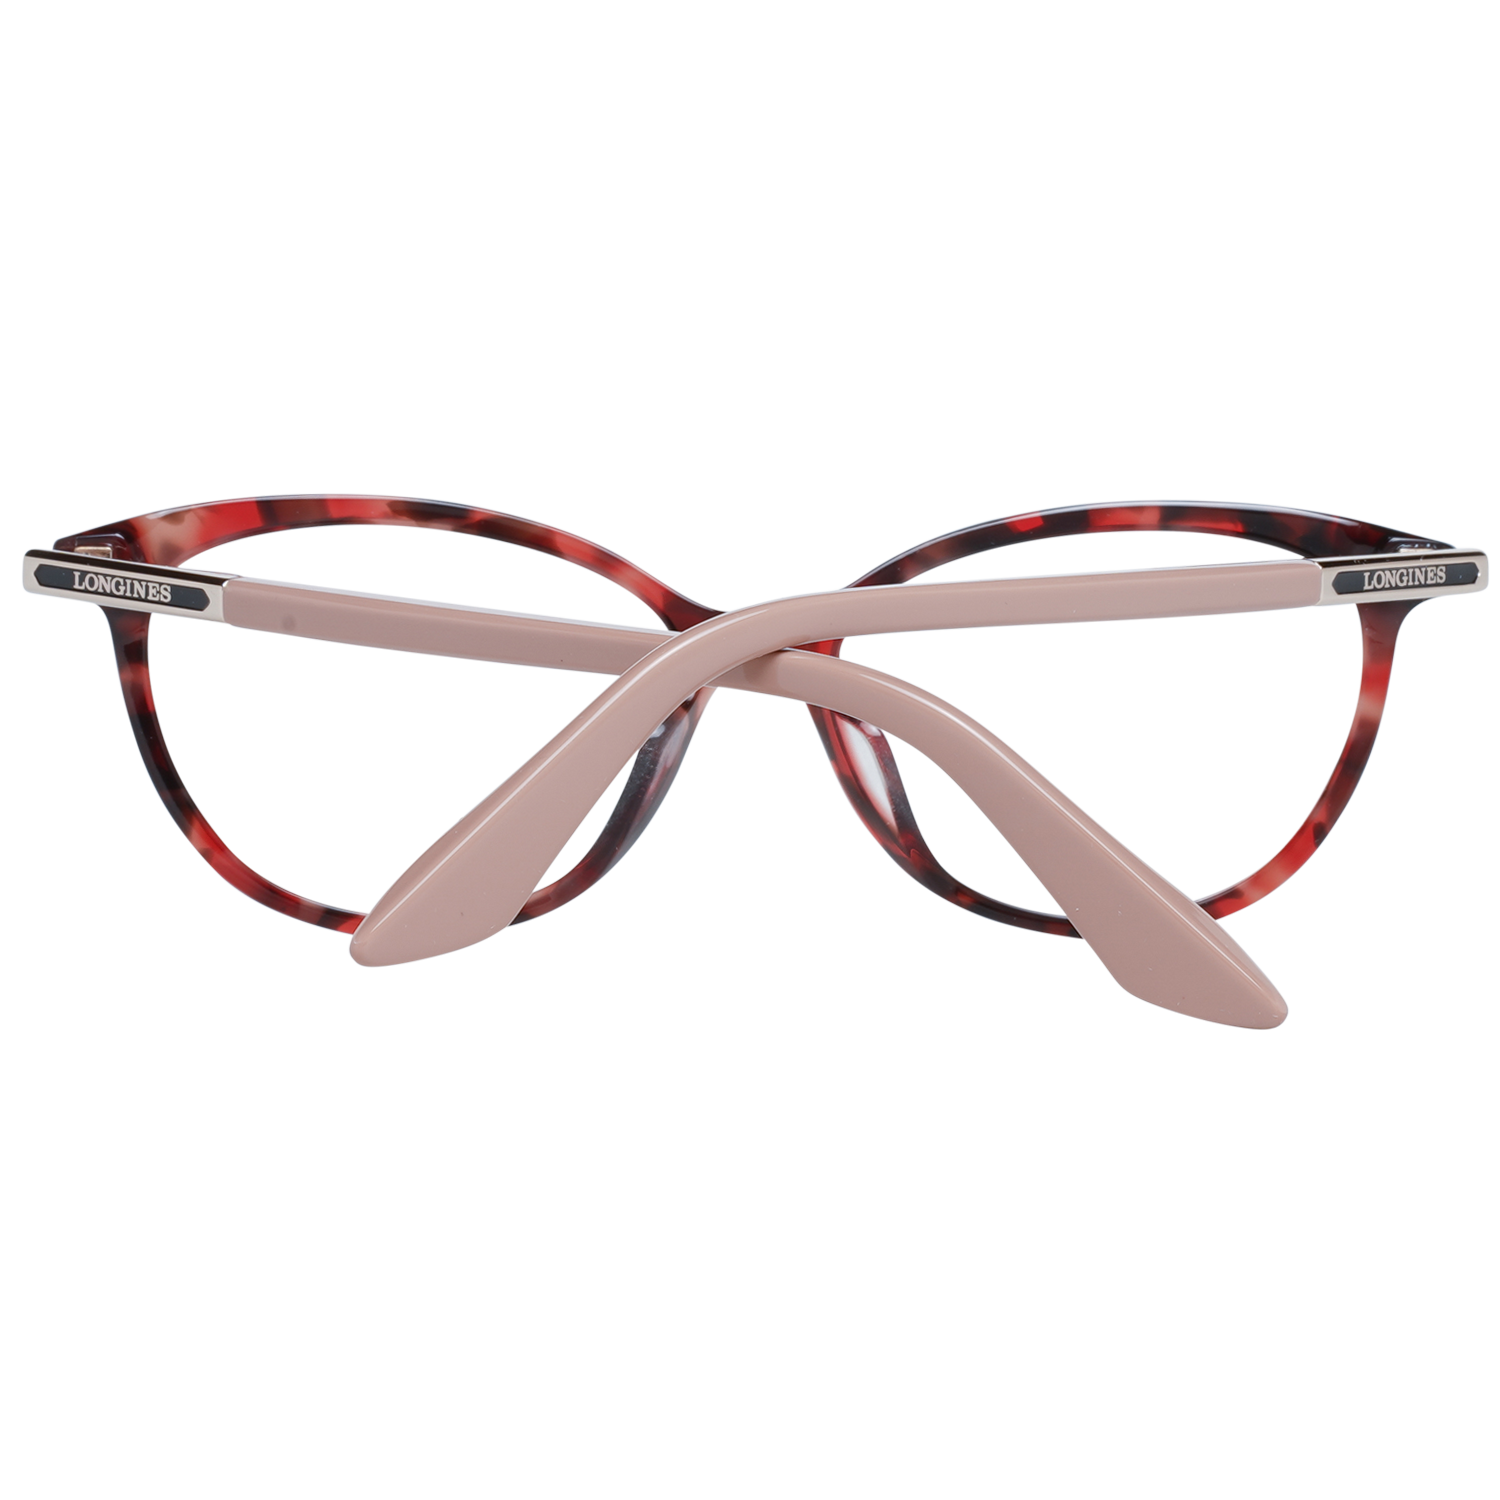 Longines Frames Longines Optical Frame LG5013-H 054 54 Eyeglasses Eyewear UK USA Australia 